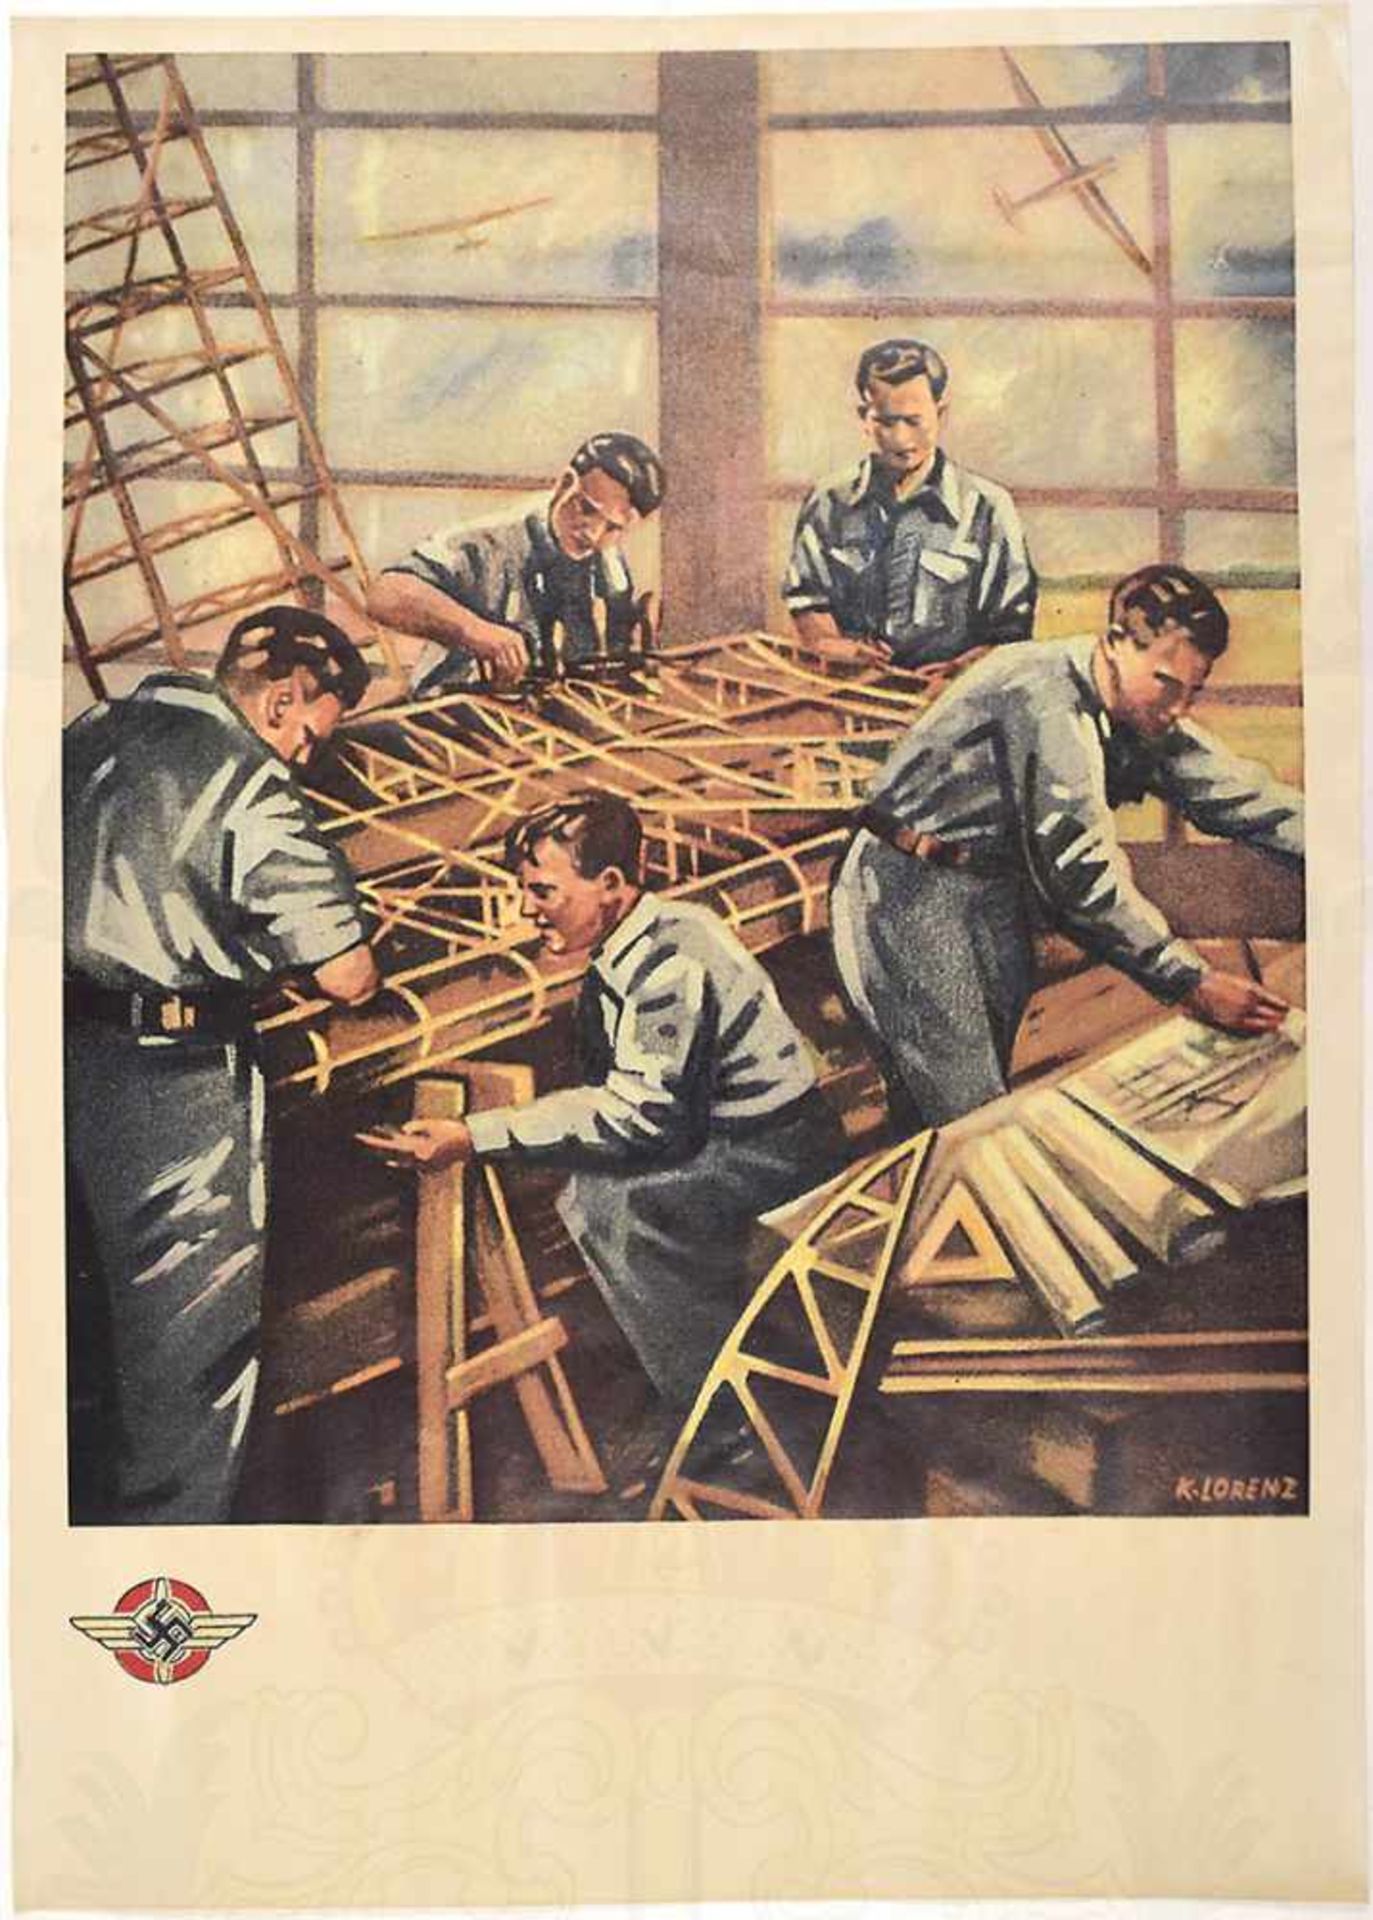 PLAKAT: NSFK-Männer beim Bau von Segelflugzeugen, farbiger Neudruck nach Original um 1935, ca. A 3